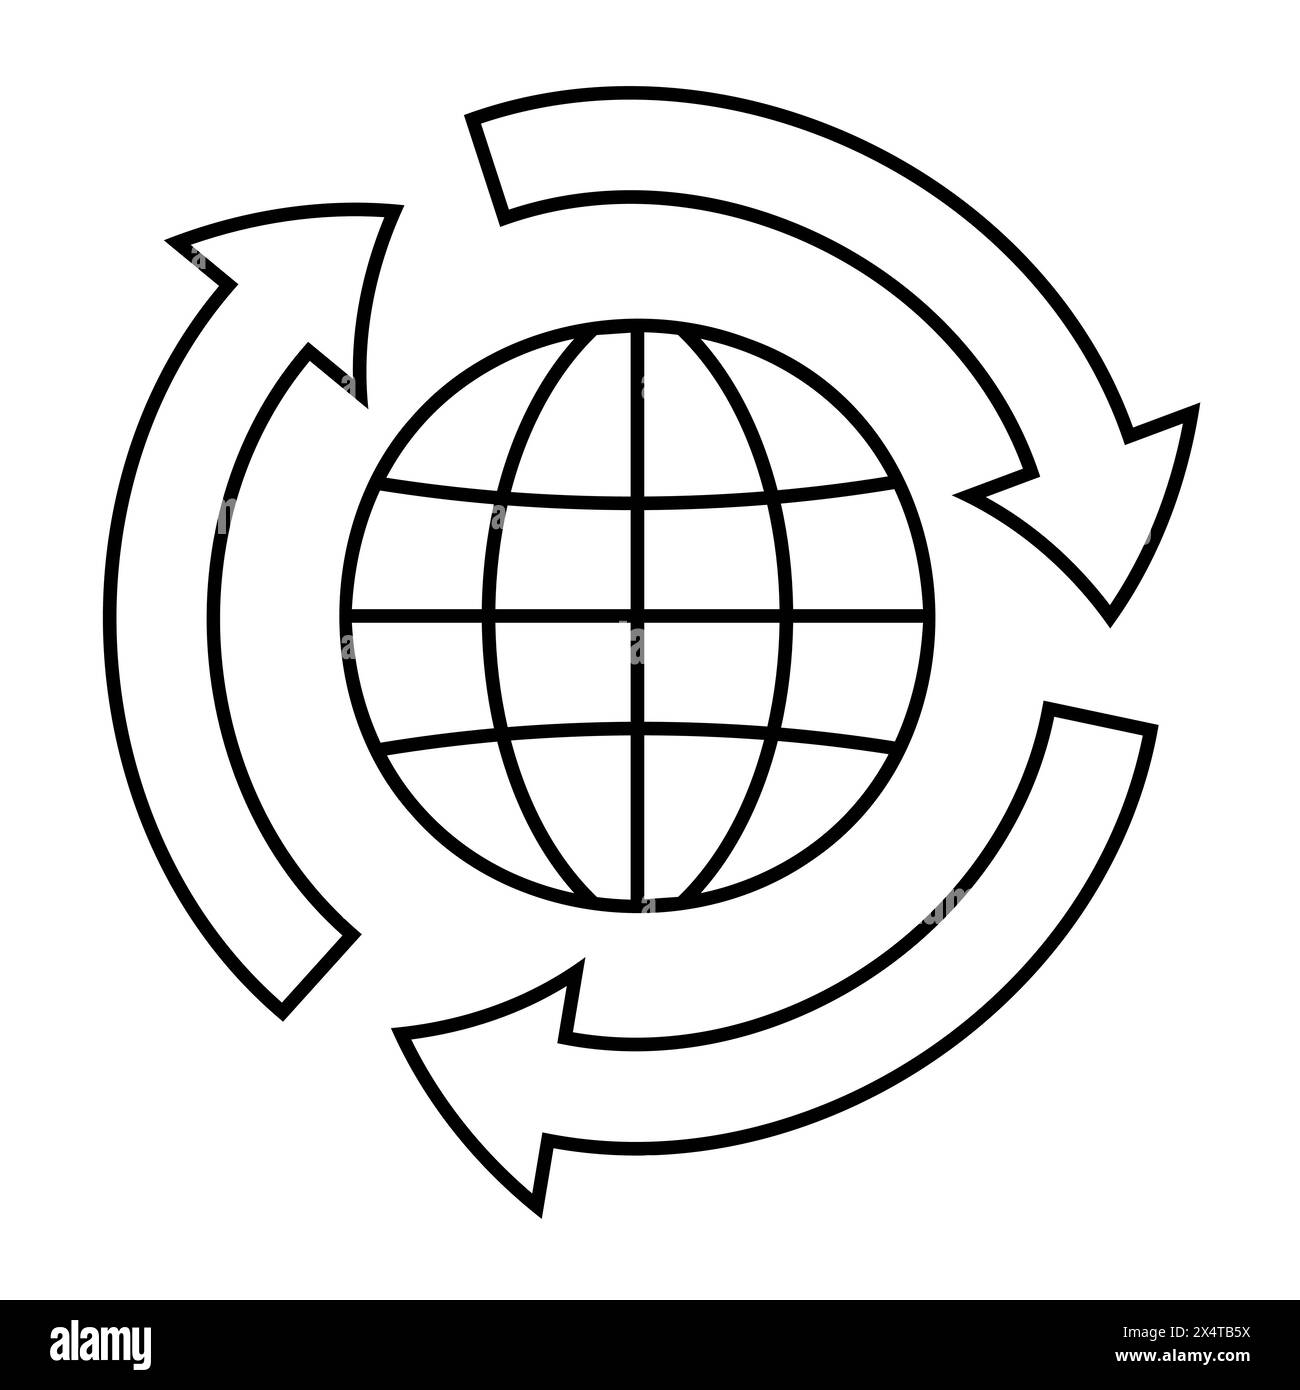 Recycling-Vektor-Symbol, schwarz flach einfach für Web- oder App-Design, weltweites Recycling, weltweites Recycling Stock Vektor